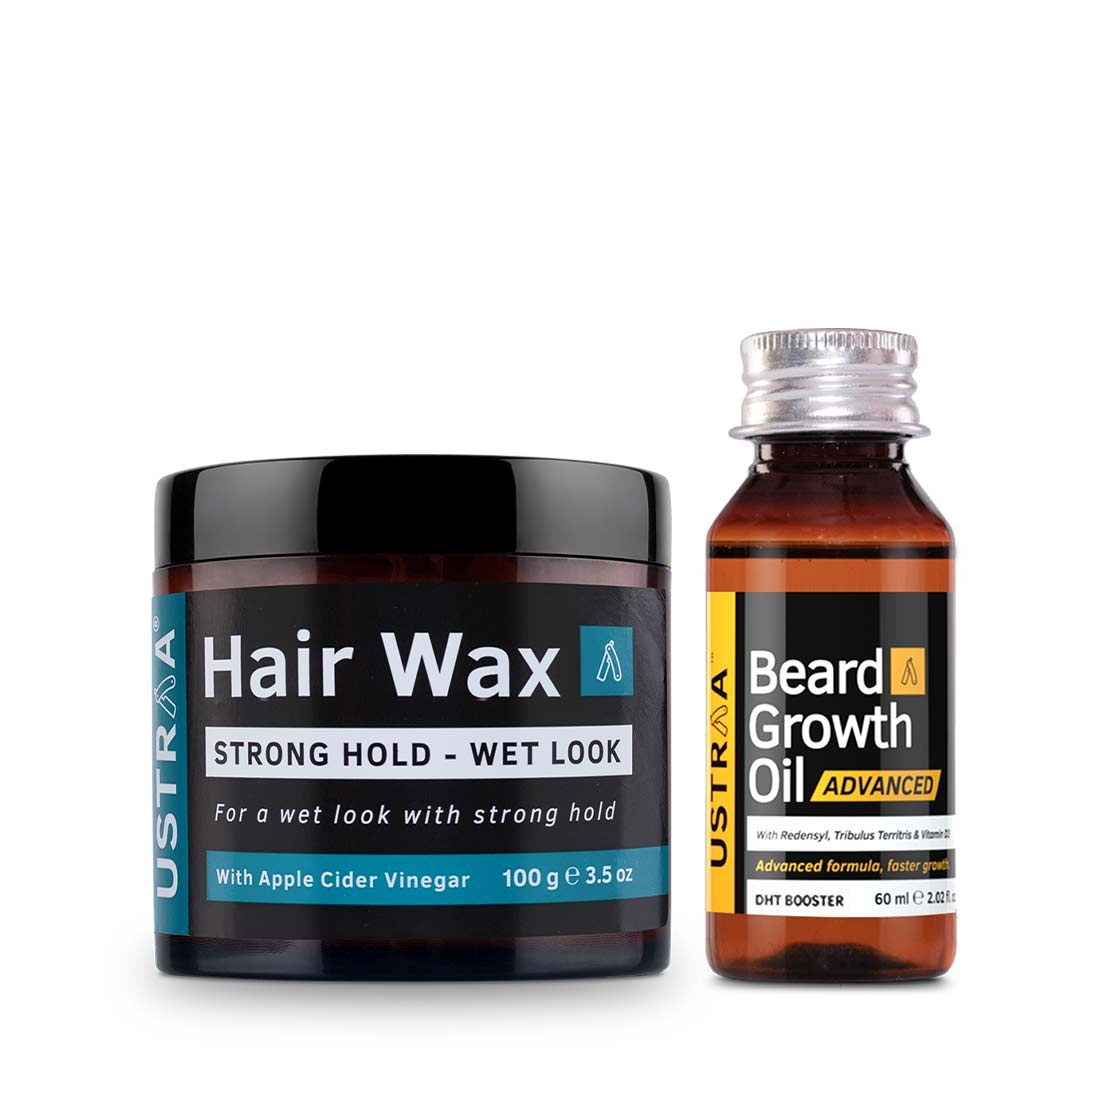 Ustraa | Ustraa Beard Growth Oil – Advanced 60 ml & Hair Wax Wet Look 100 g